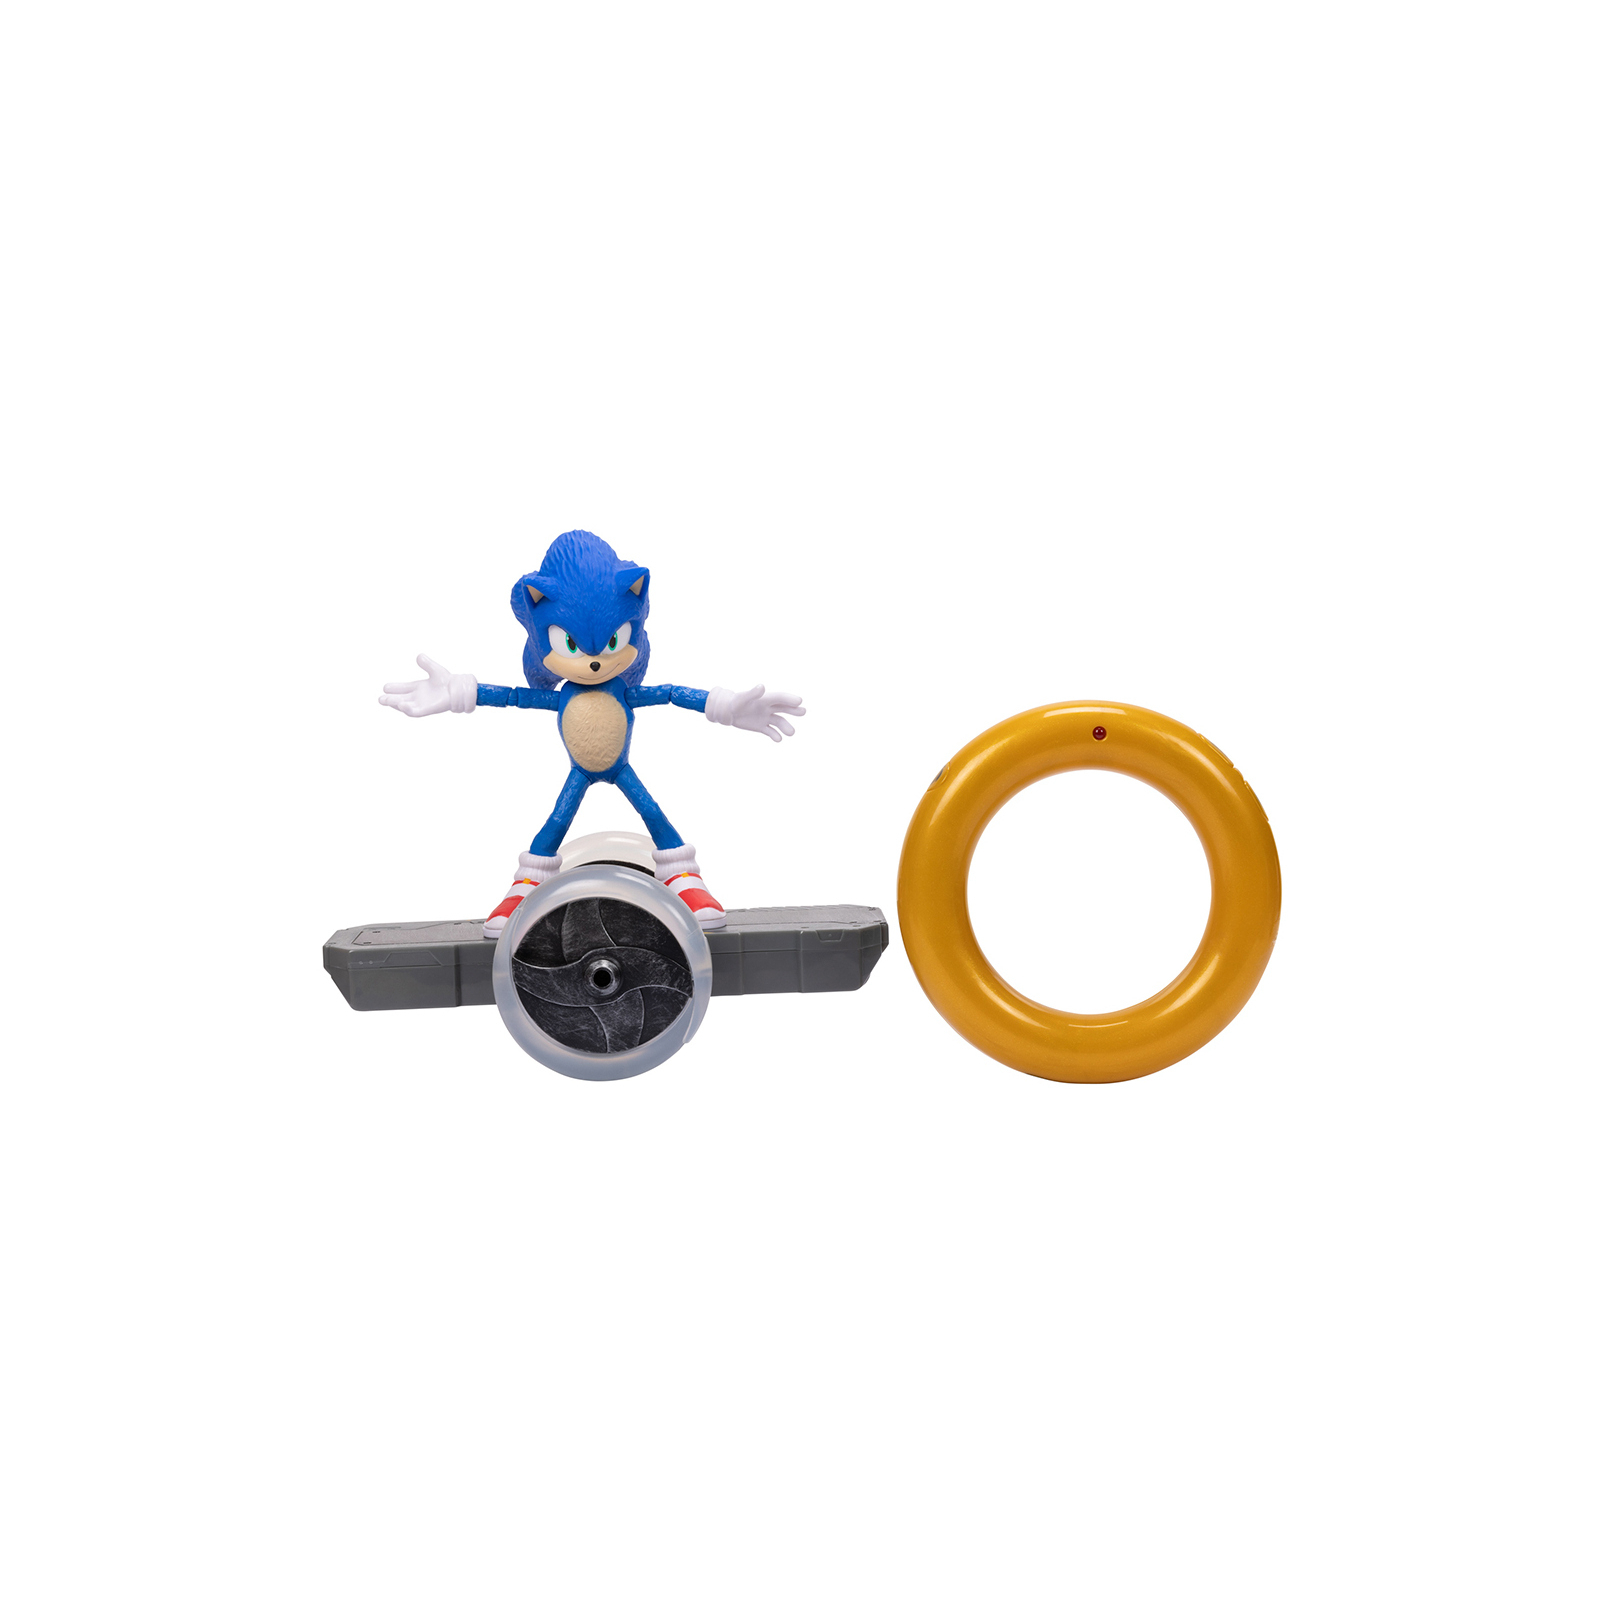 Фигурка Sonic the Hedgehog с артикуляцией на радиоуправлении (409244)